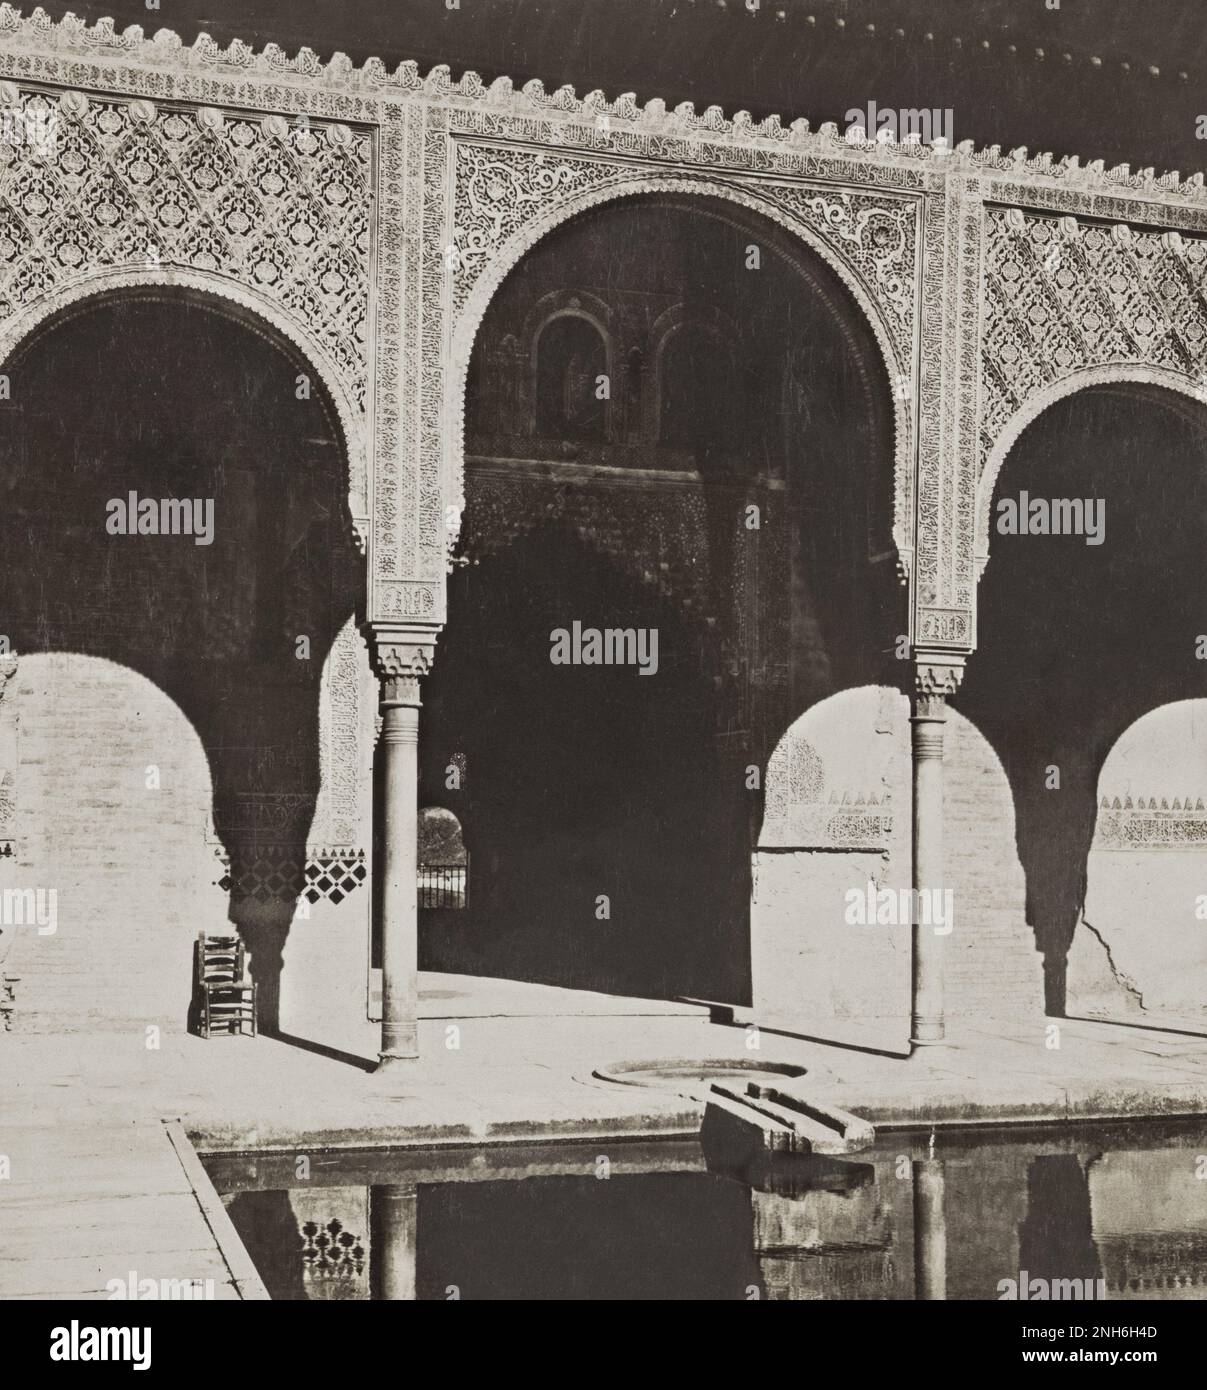 Architecture de la vieille Espagne. Photo d'époque de l'Alhambra. Grenade, Espagne. 1901 Banque D'Images